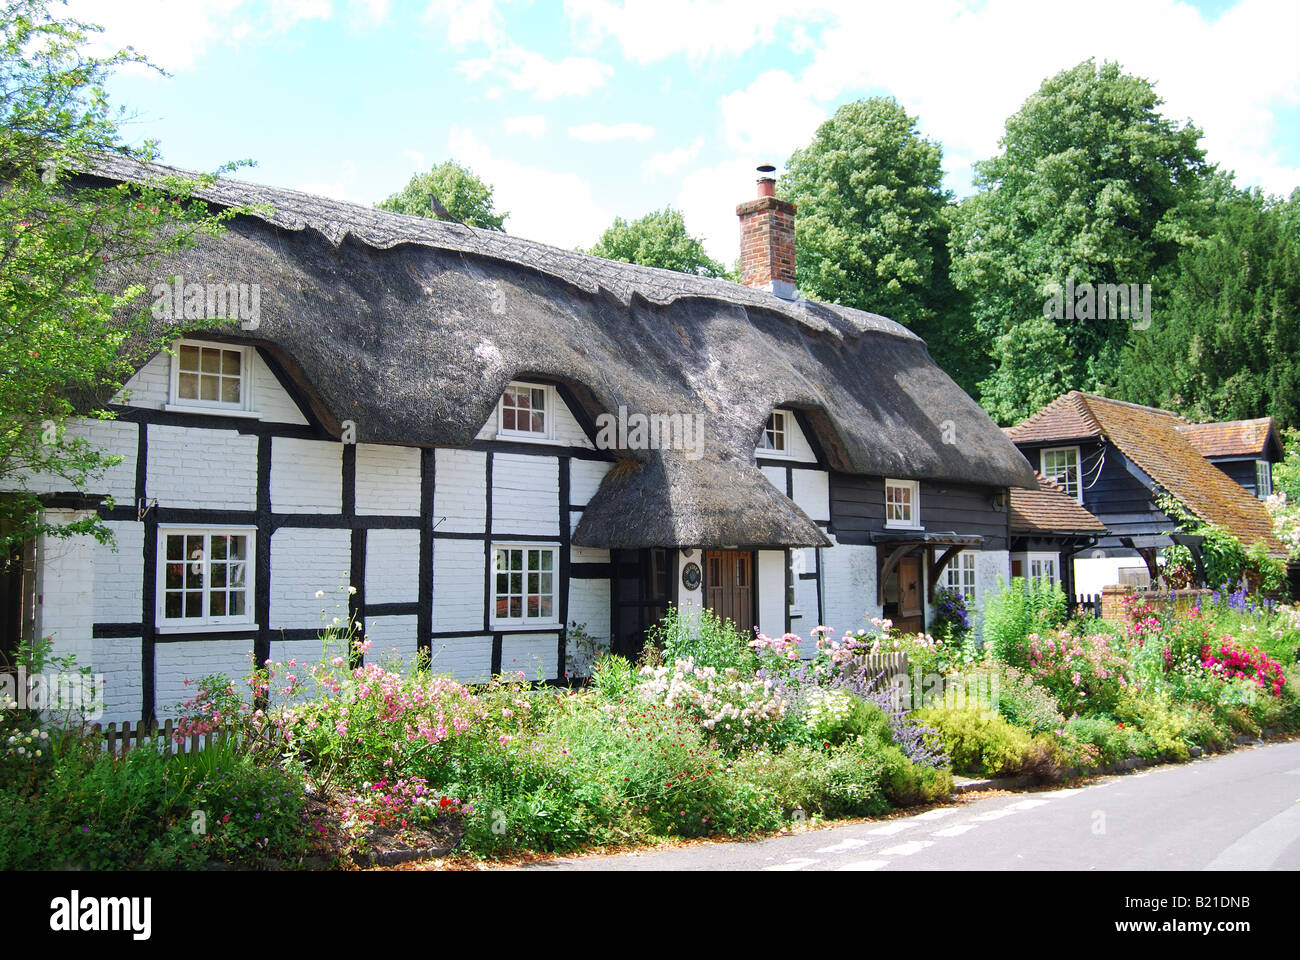 Maison à pans de bois, des chaumières, Micheldever, Hampshire, Angleterre, Royaume-Uni Banque D'Images